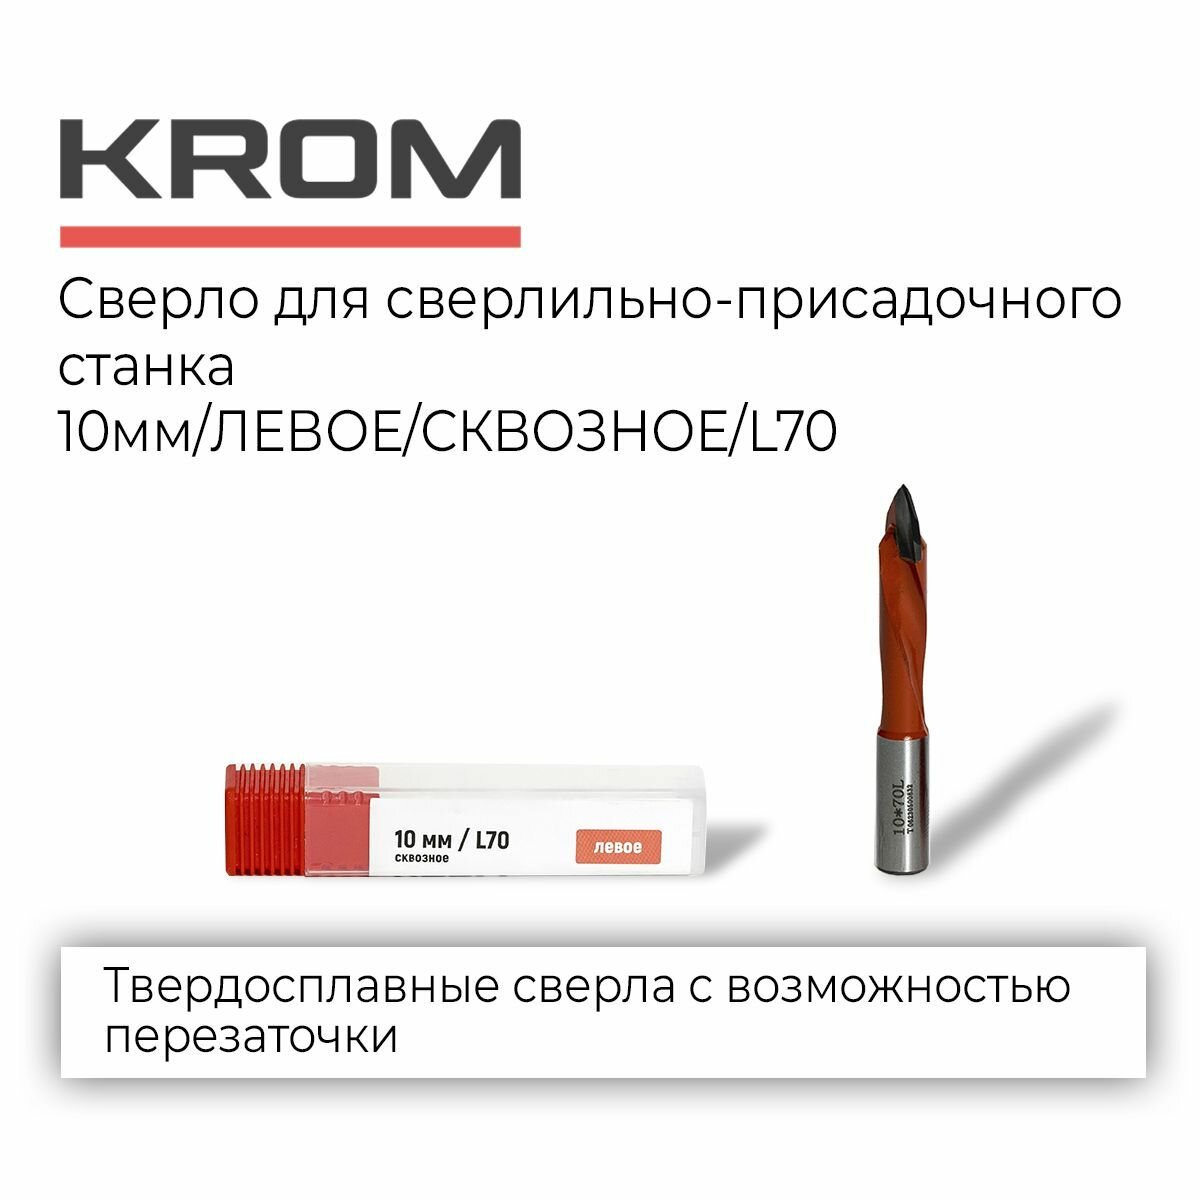 Сверла KROM D10/70/левое/сквозное для сверлильно-присадочного станка